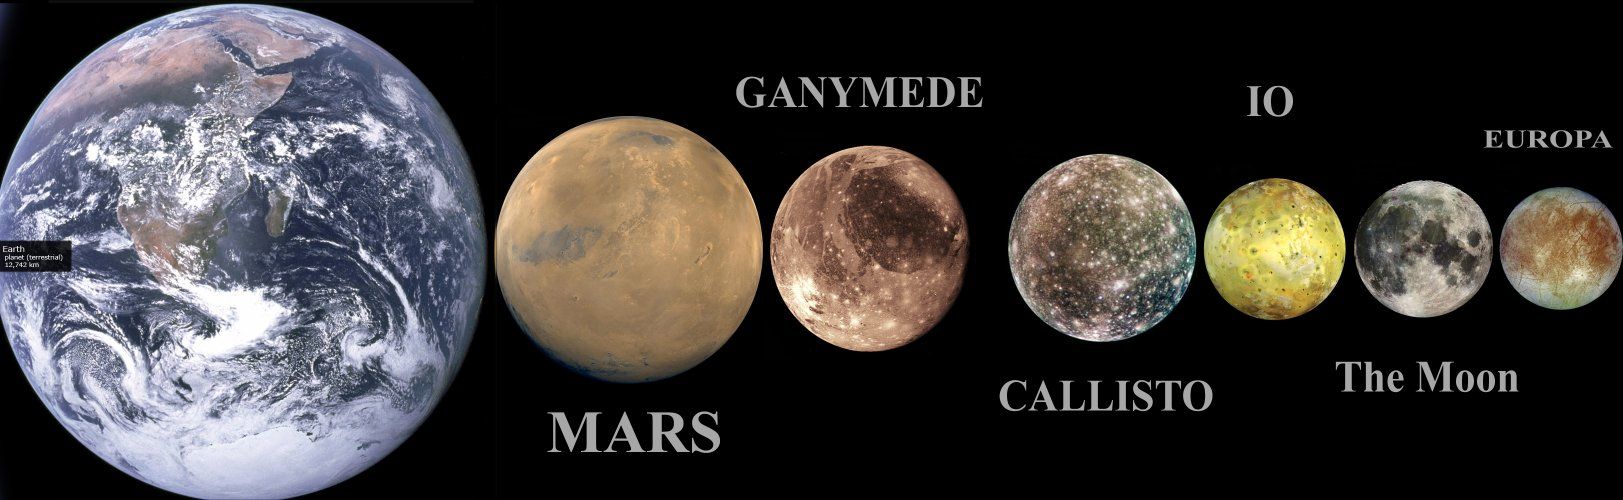 Ганимед сравнен с Марс и другите луни на Юпитер